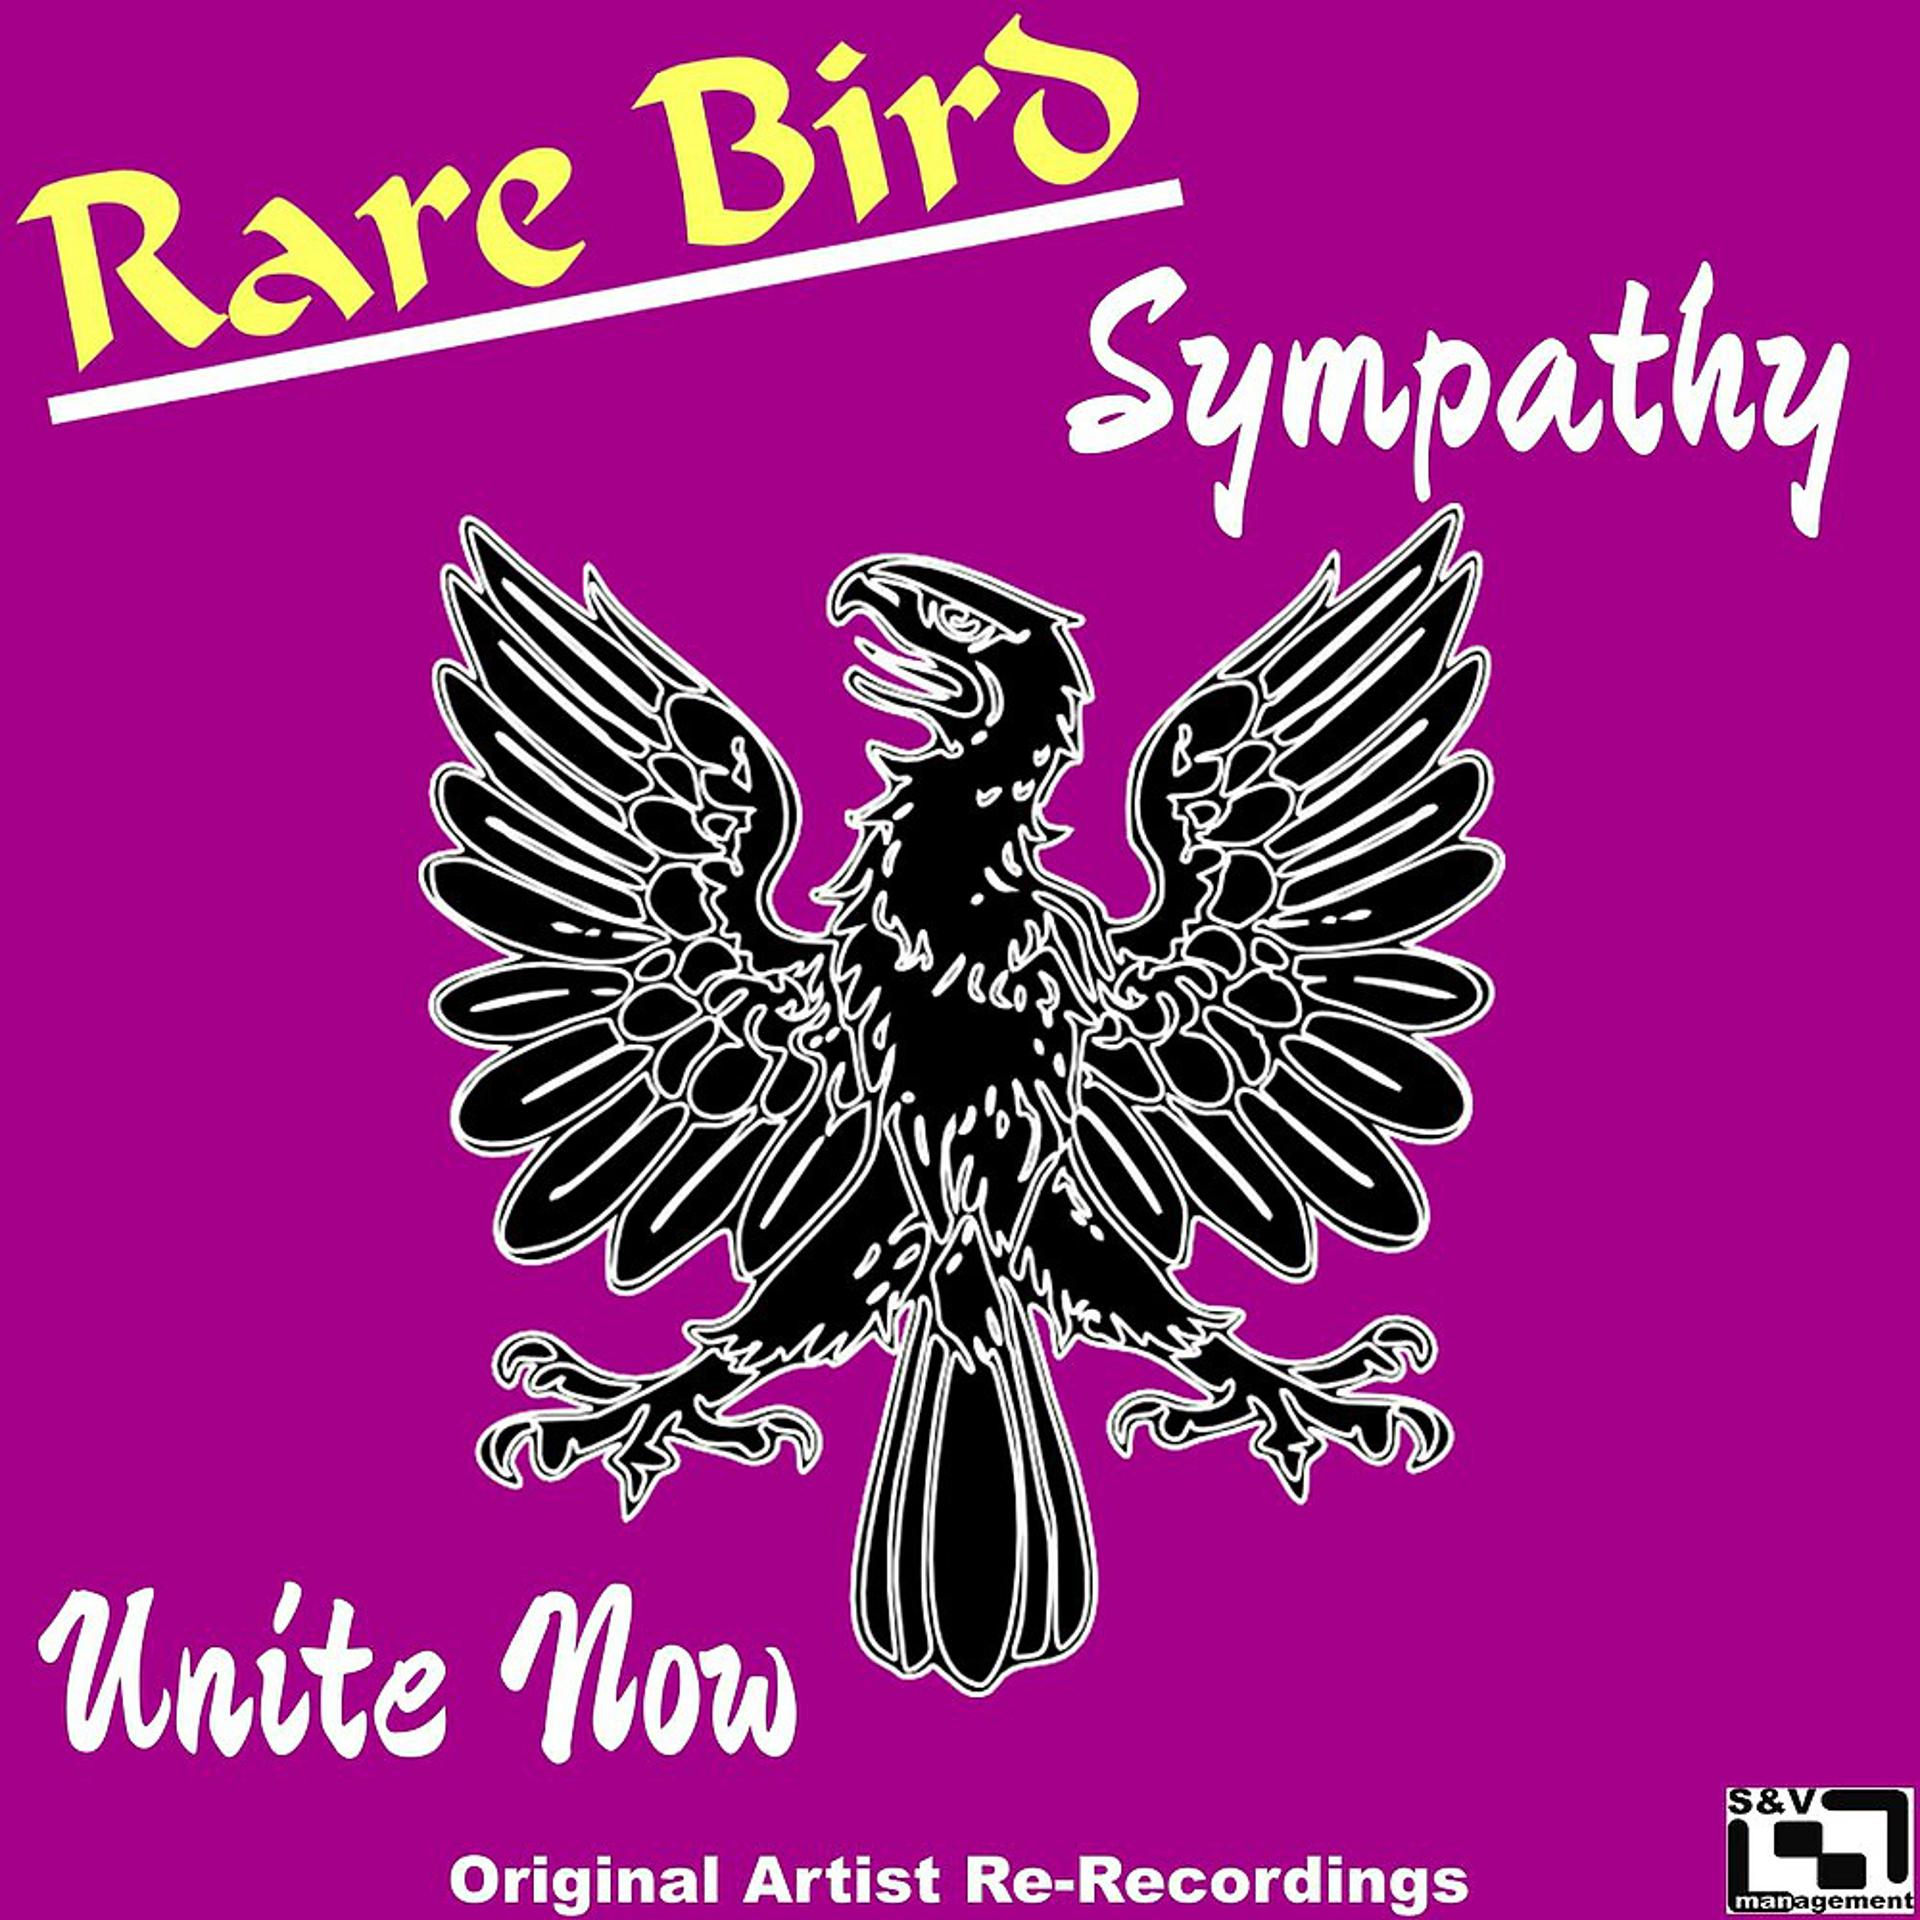 Sympathy rare Bird. Sympathy (rare Bird Song). Rare Bird Sympathy обложка. Versailles - Lyrical Sympathy.